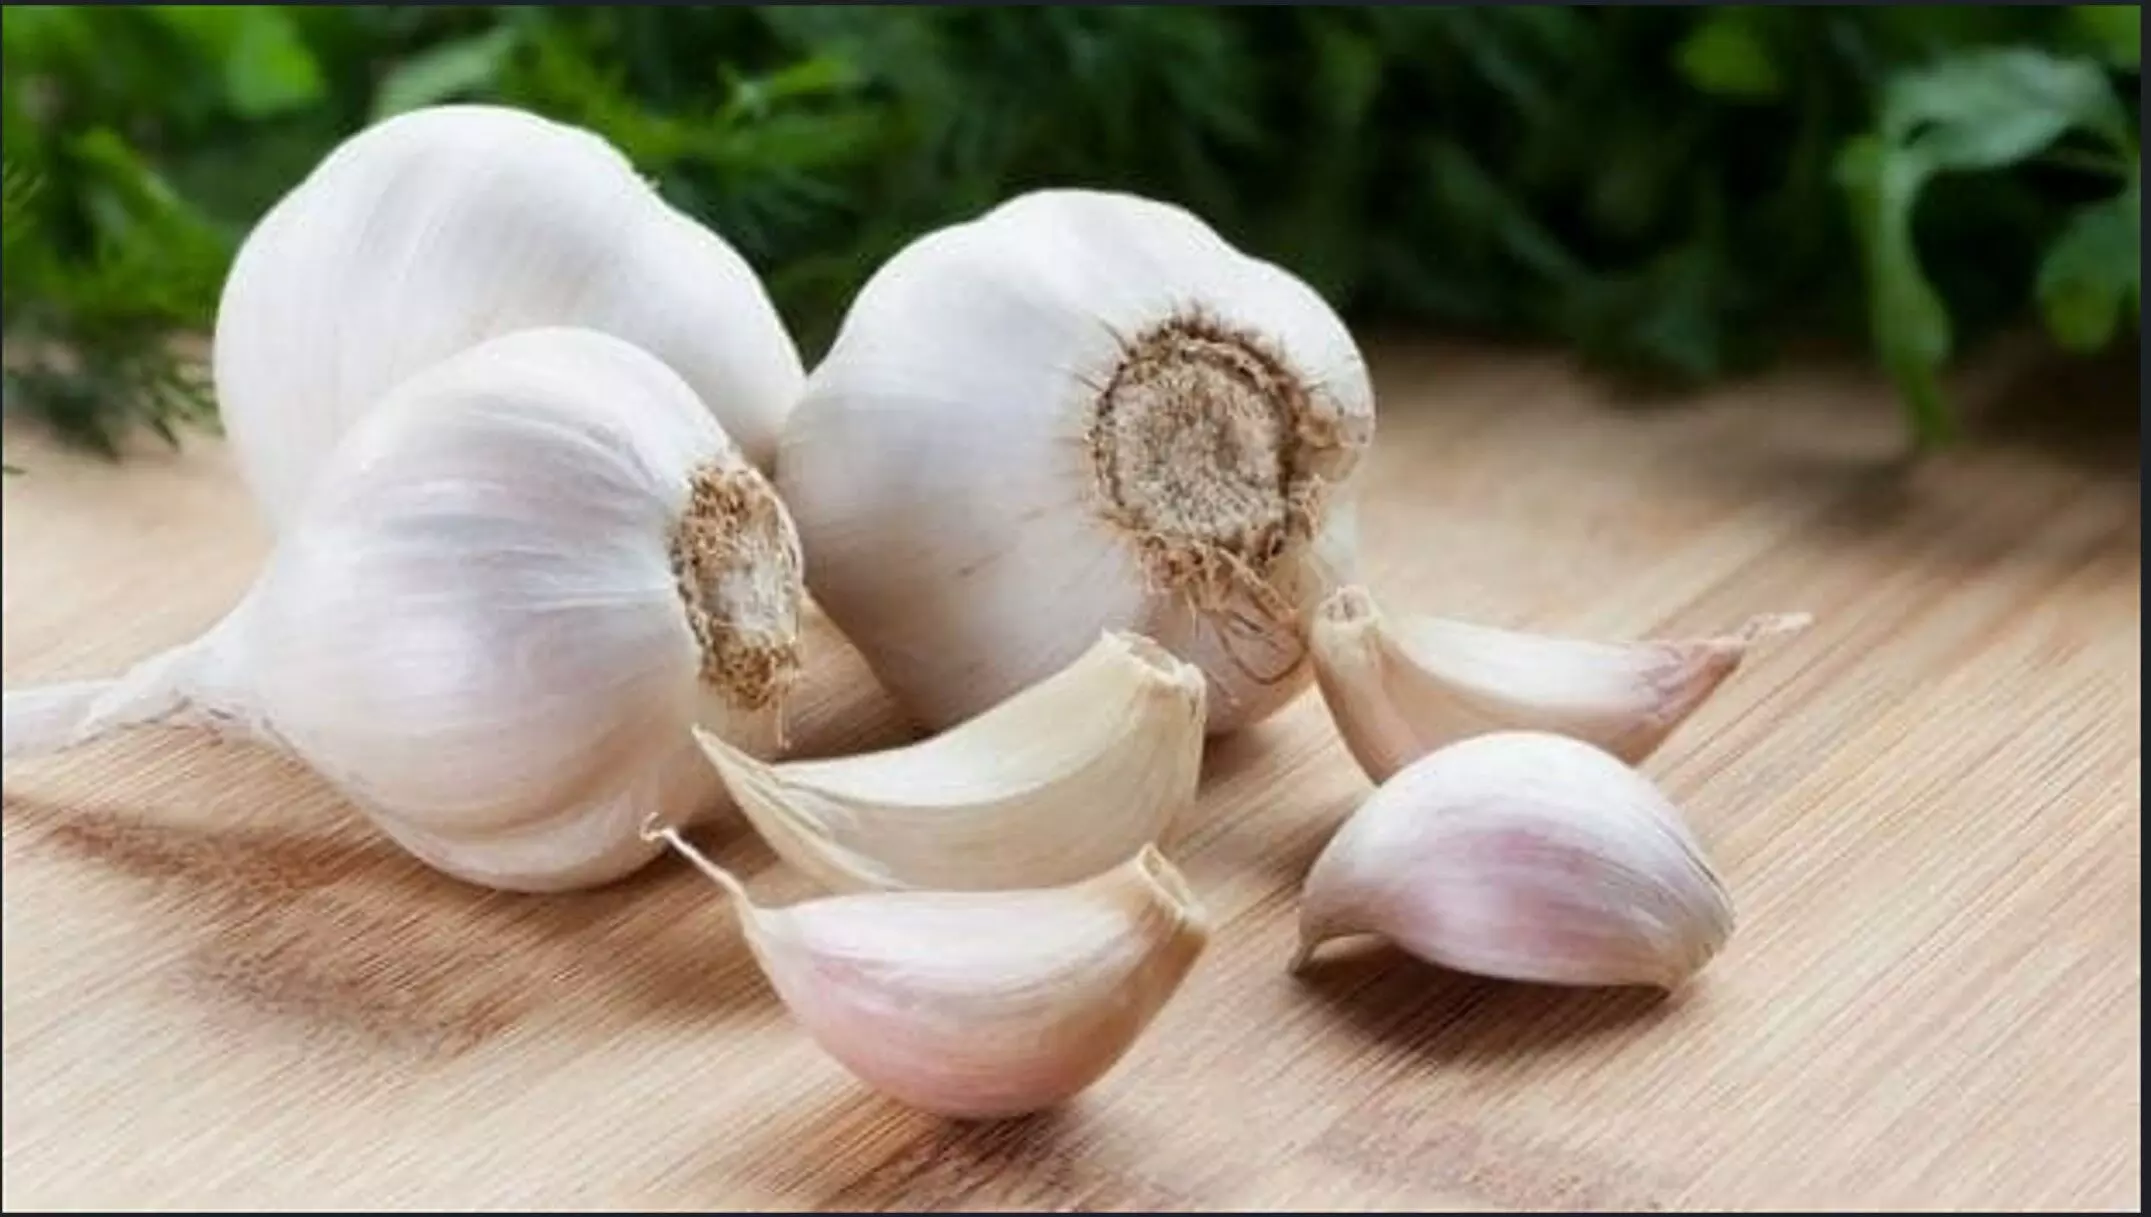 Benefits And Side Effects Of Garlic: लहसुन खाने के हैरान करने वाले फायदे और नुकसान